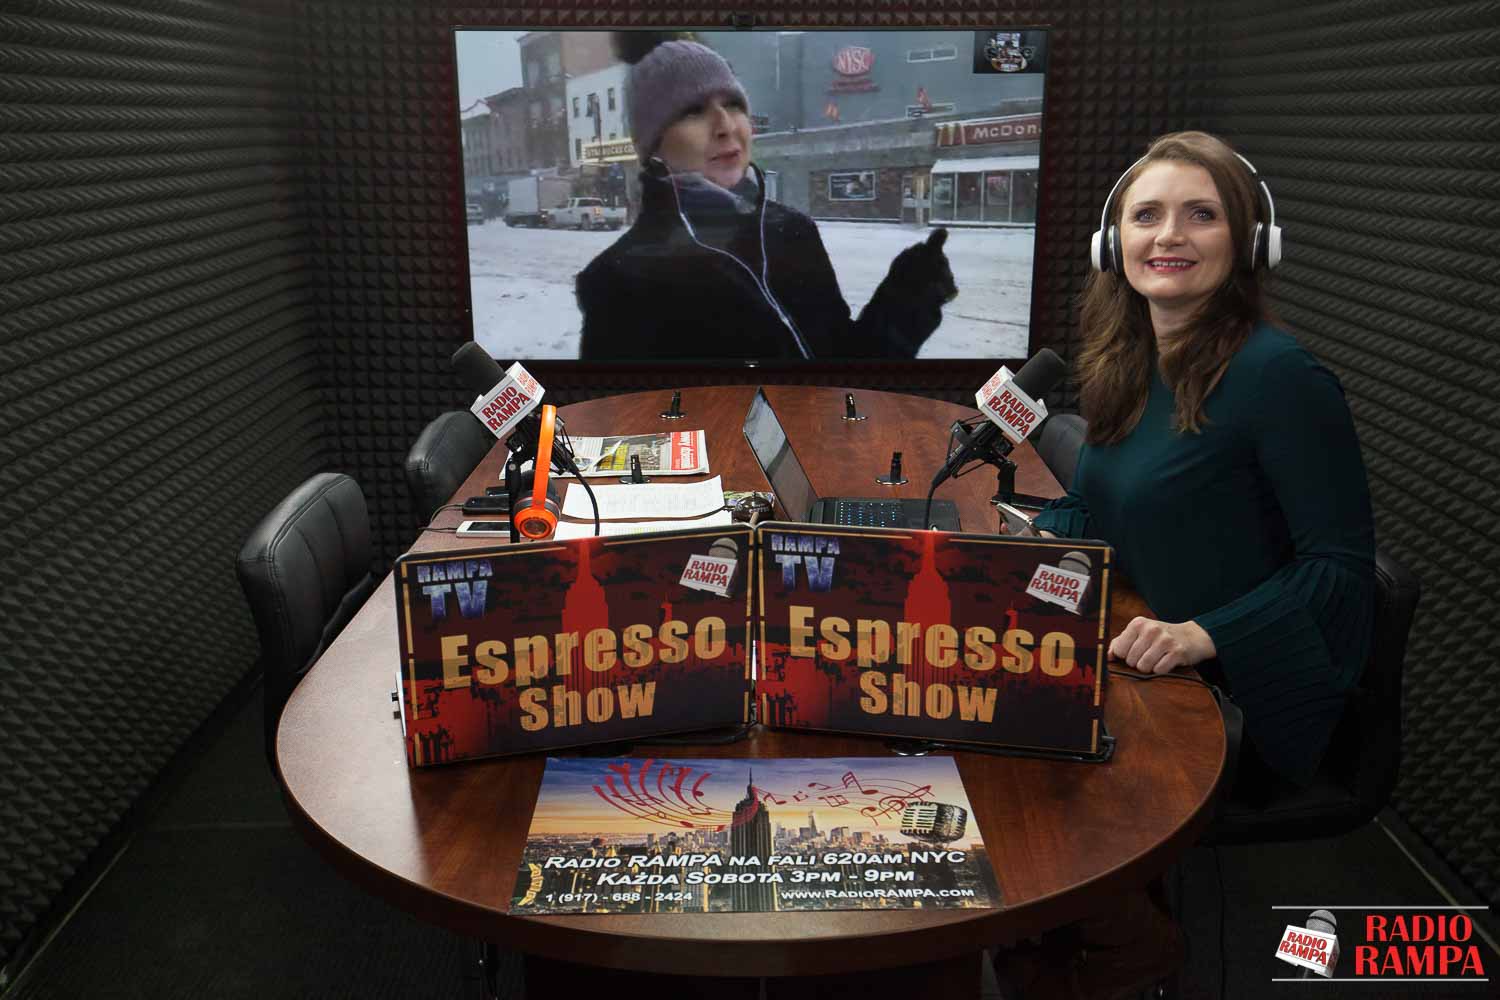 Espresso Show 1-4-18 Cyklon śnieżny w Nowym Jorku - aktualizacje na żywo, relacja z Florydy i Chicago. Temat do dyskusji: edukacja seksualna młodzieży.